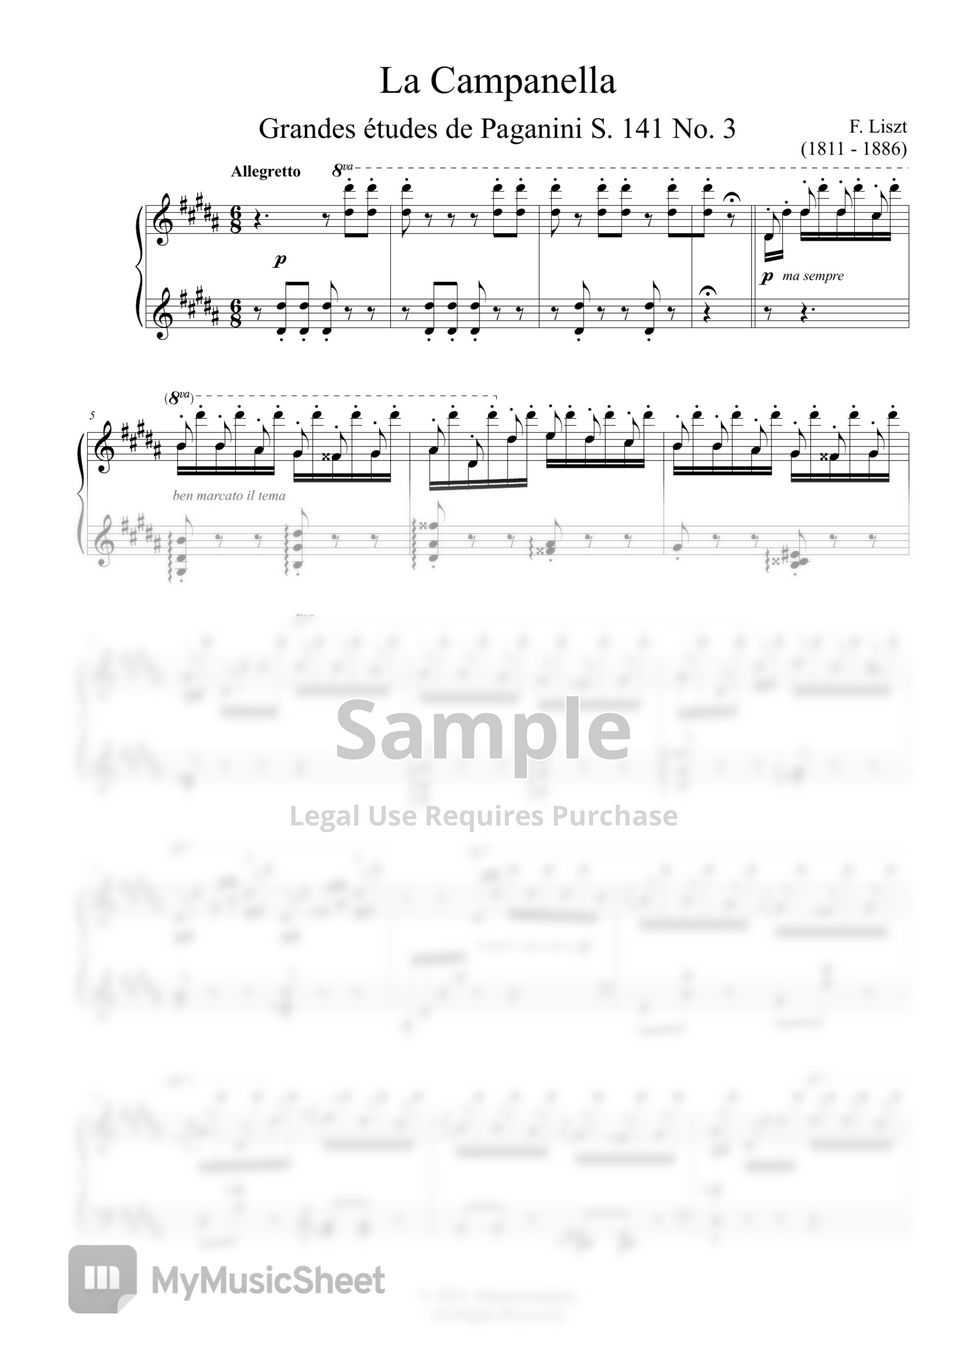 F. Liszt - La Campanella